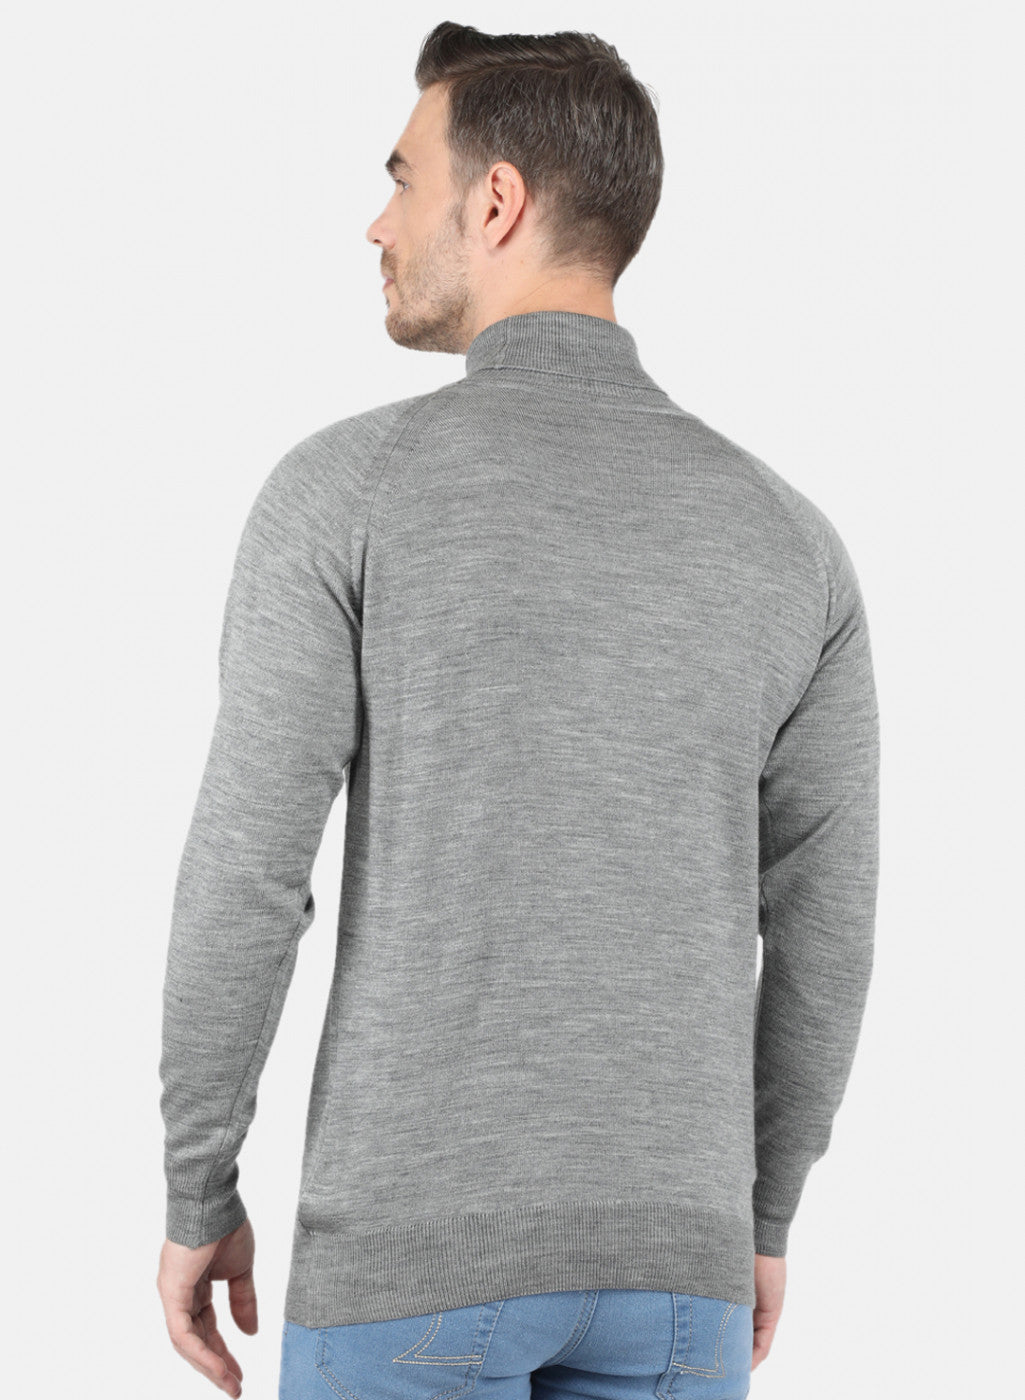 Buy Men Grey Solid Pullover Online in India - Monte Carlo